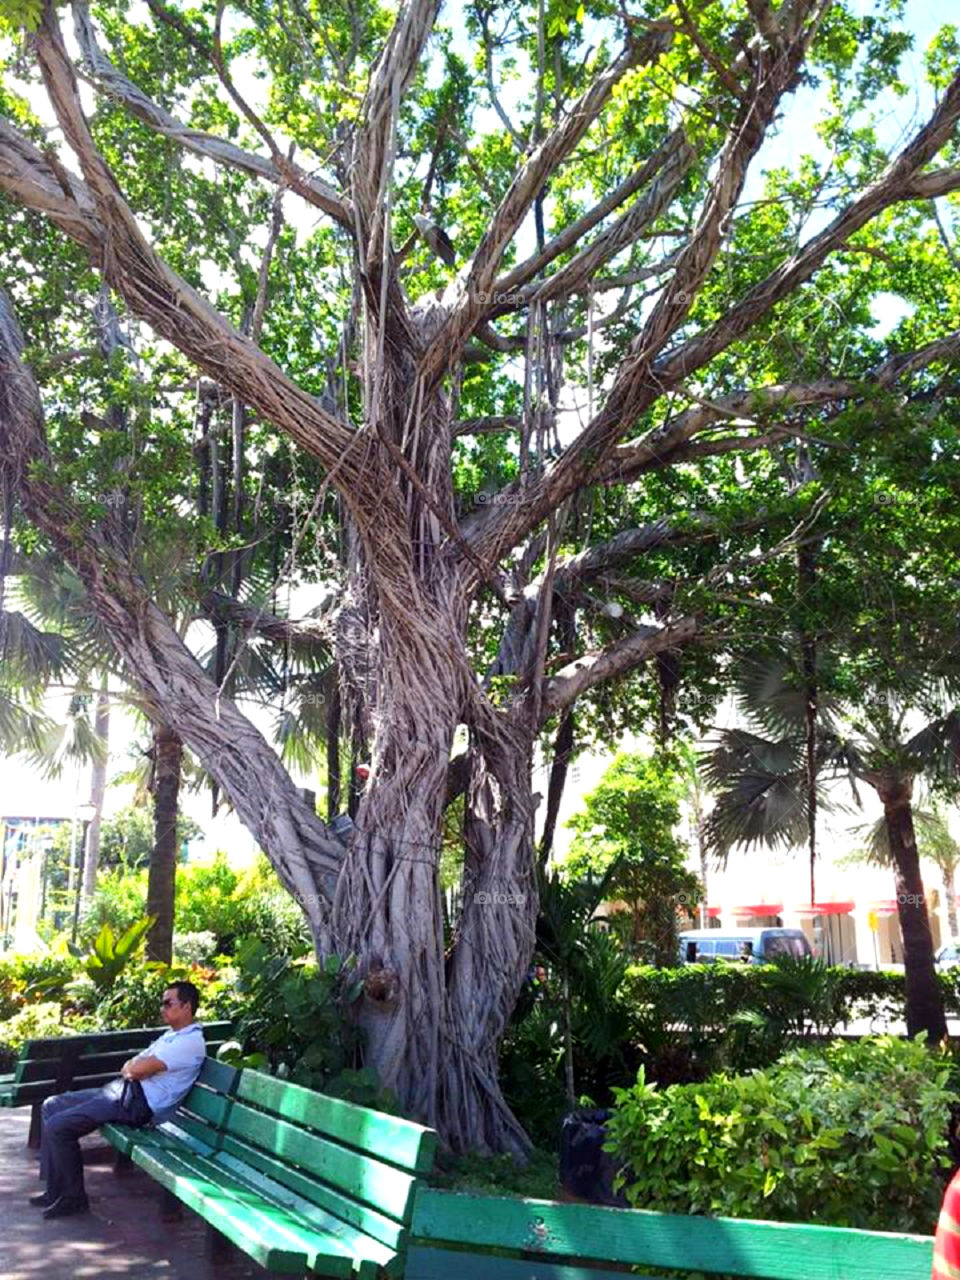  Bahamas tree. This tree was at the center of town at Nassau Bahamas